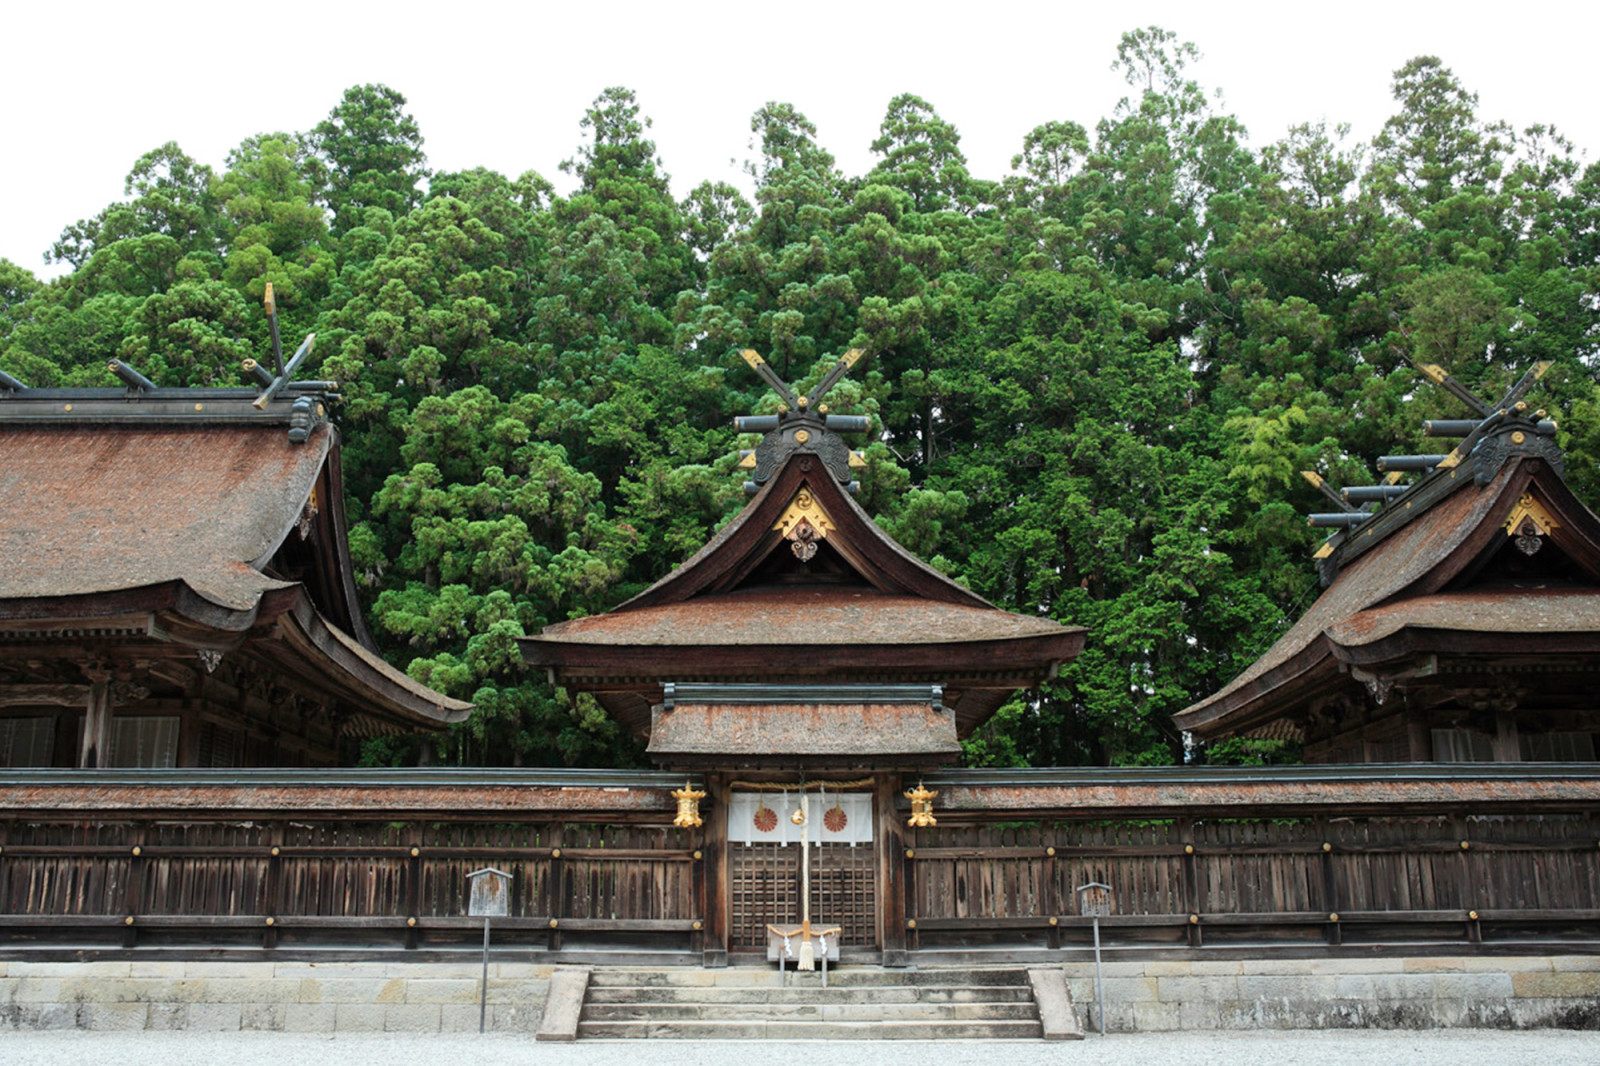 桧皮葺で古色蒼然とした御本殿の熊野本宮大社。
©和歌山県観光連盟